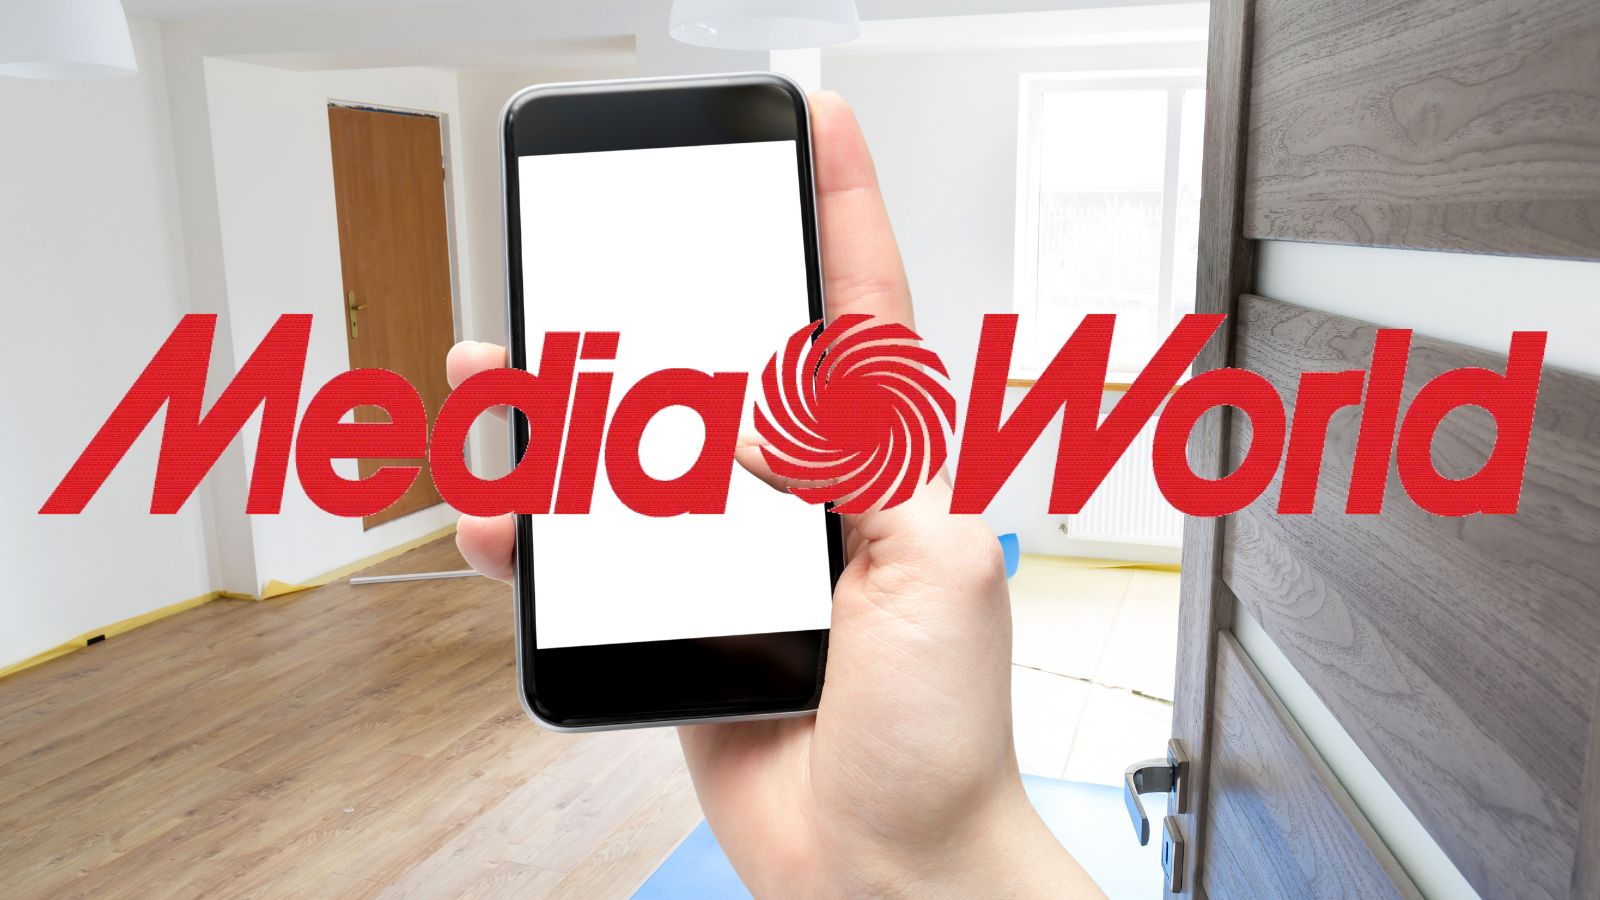 MediaWorld REGALA offerte al 90% con i prezzi praticamente GRATIS